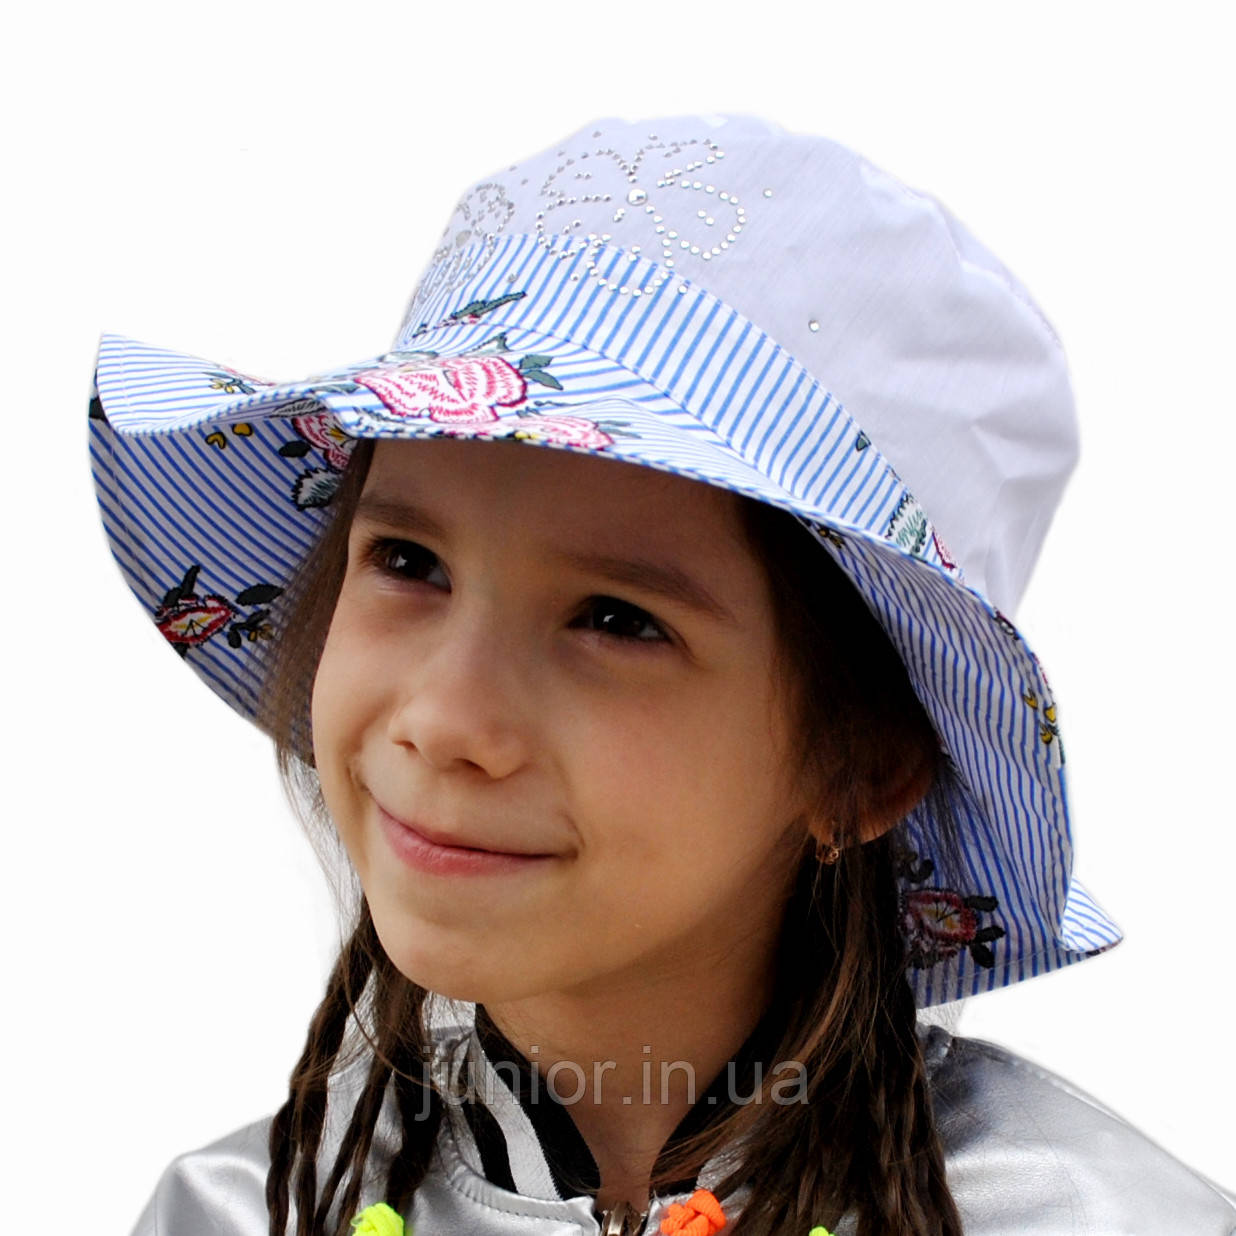 Літній капелюшок для дівчинки.Лола.